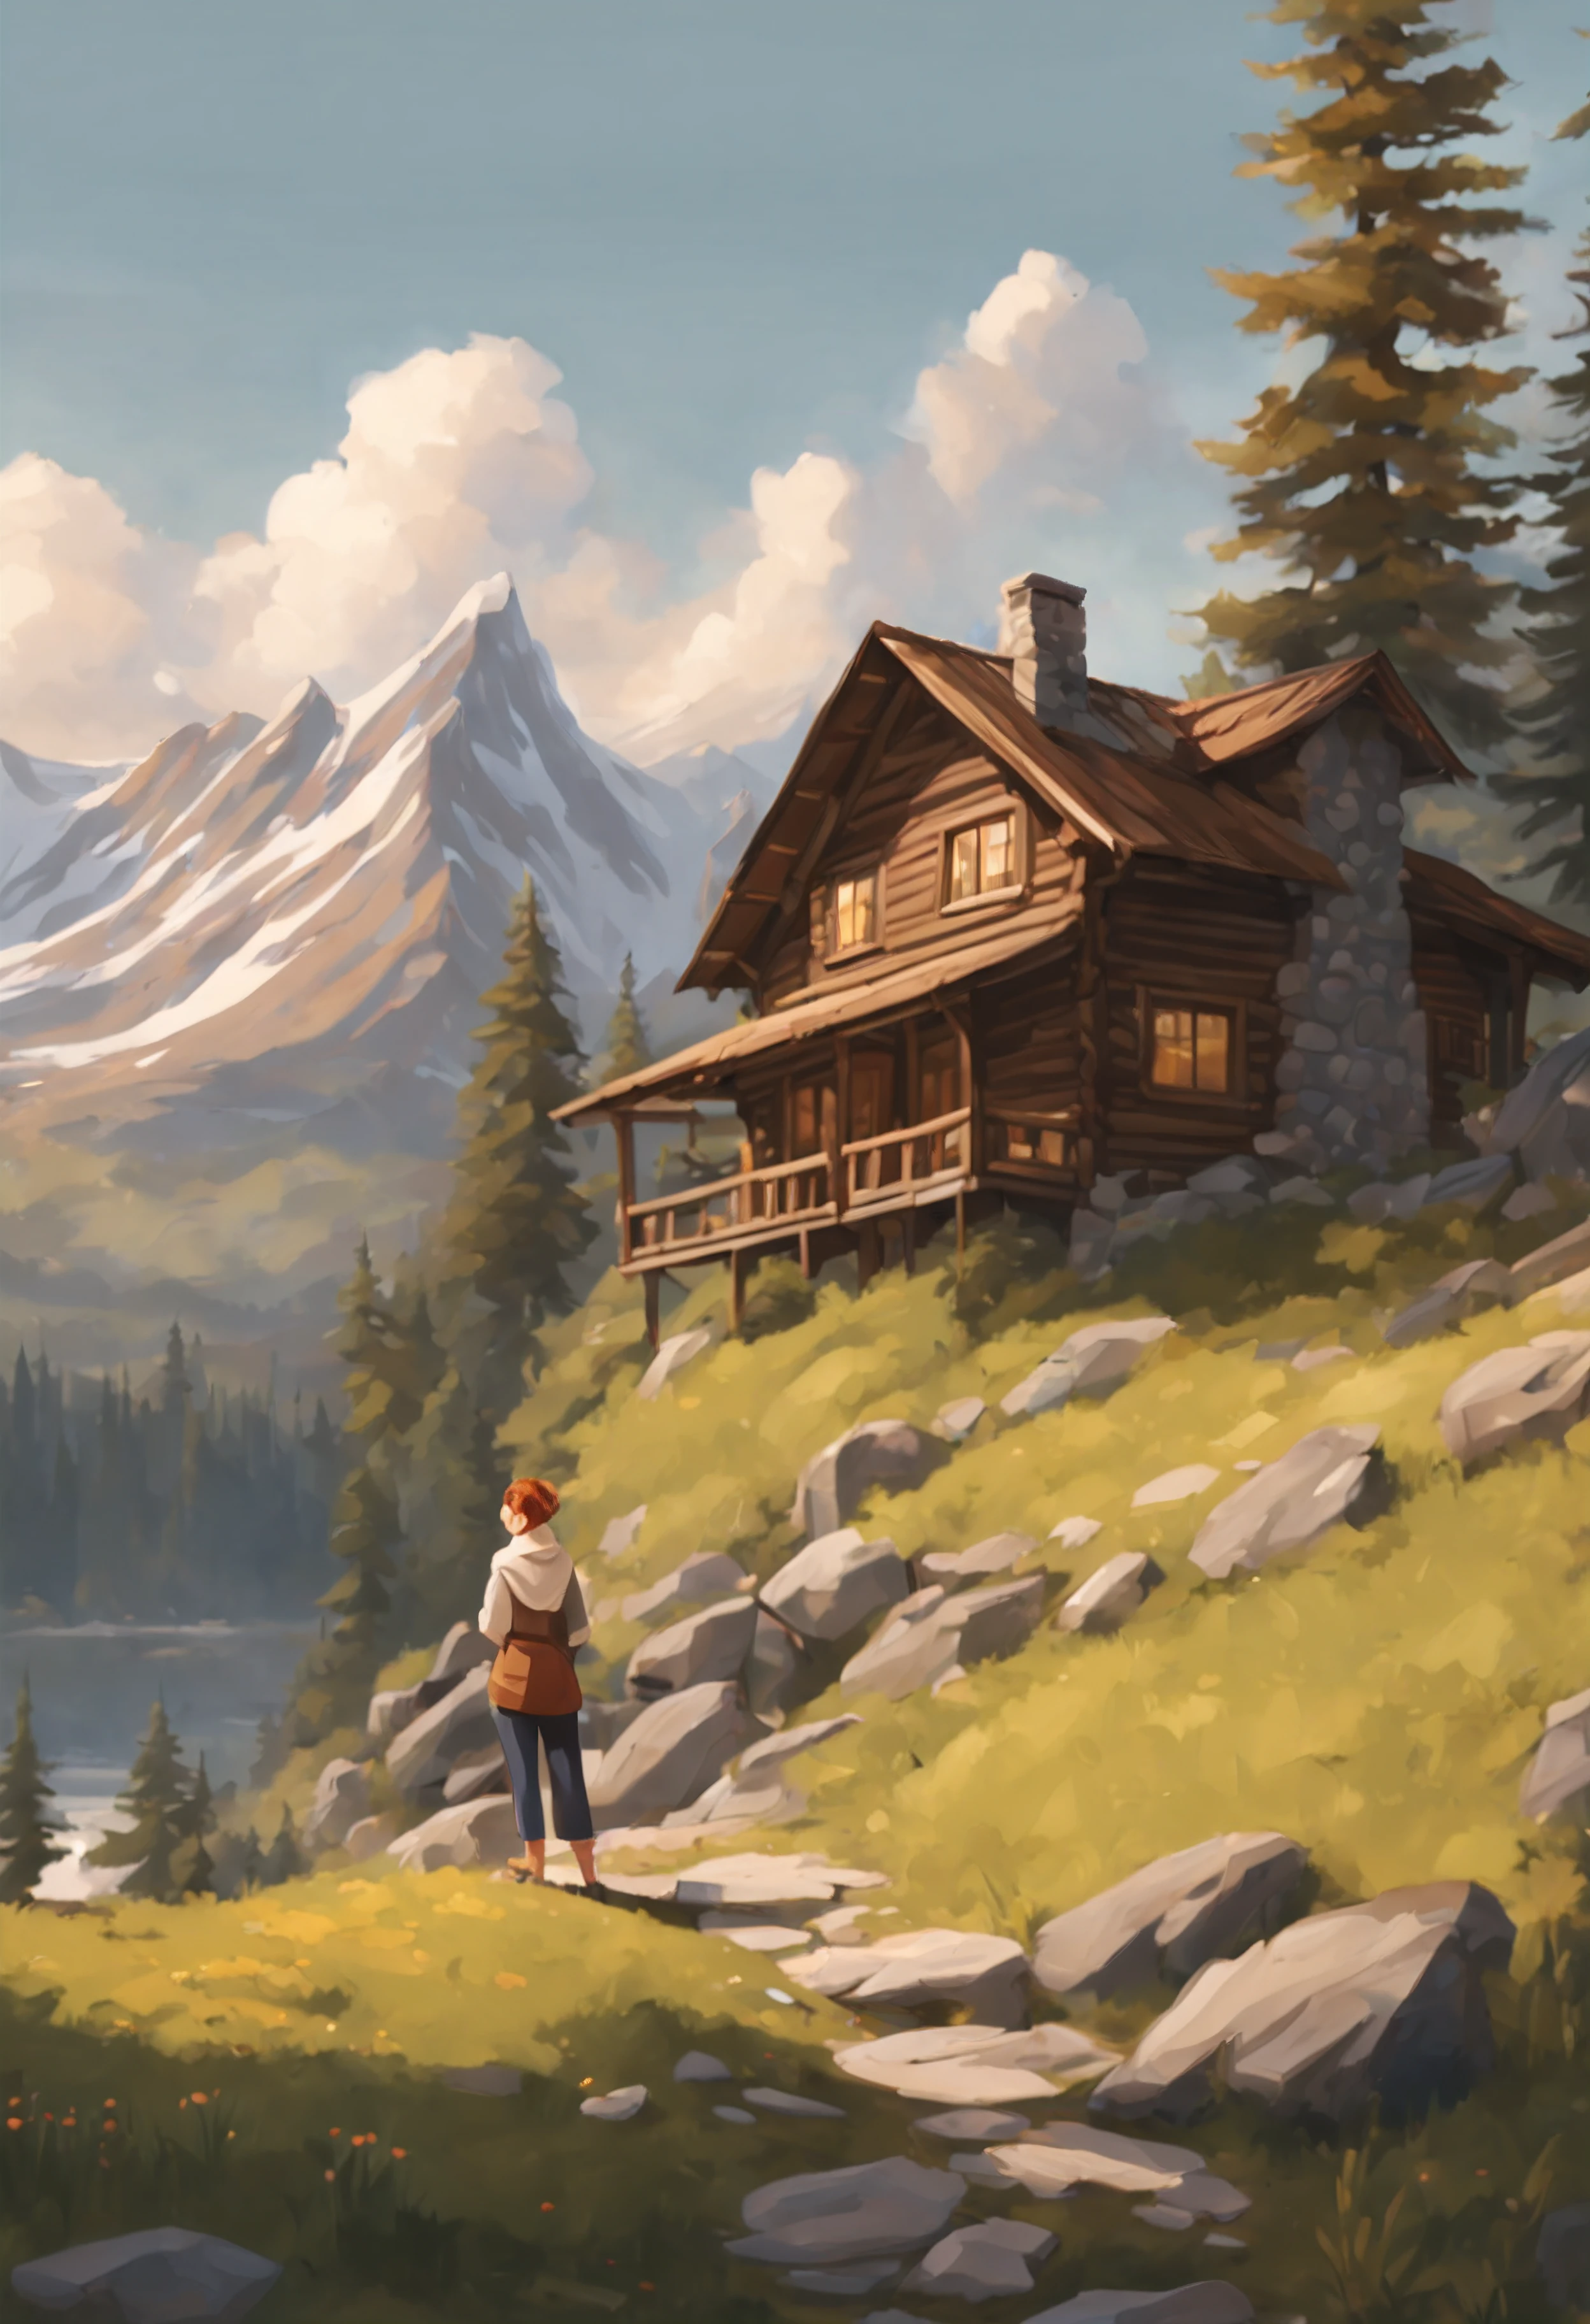 Eine ruhige Szene einer Dame, die vor einer gemütlichen Berghütte steht, umgeben von der Majestät der Natur. Sie blickt auf die ruhige Landschaft, ein Rückzugsort von der Hektik des Alltags. rustikaler Charme, Gelassenheit in den Bergen, Wildnisflucht, friedliche Kontemplation, Kabinenkomfort, Anime-Realismus, Perfekte Illustration